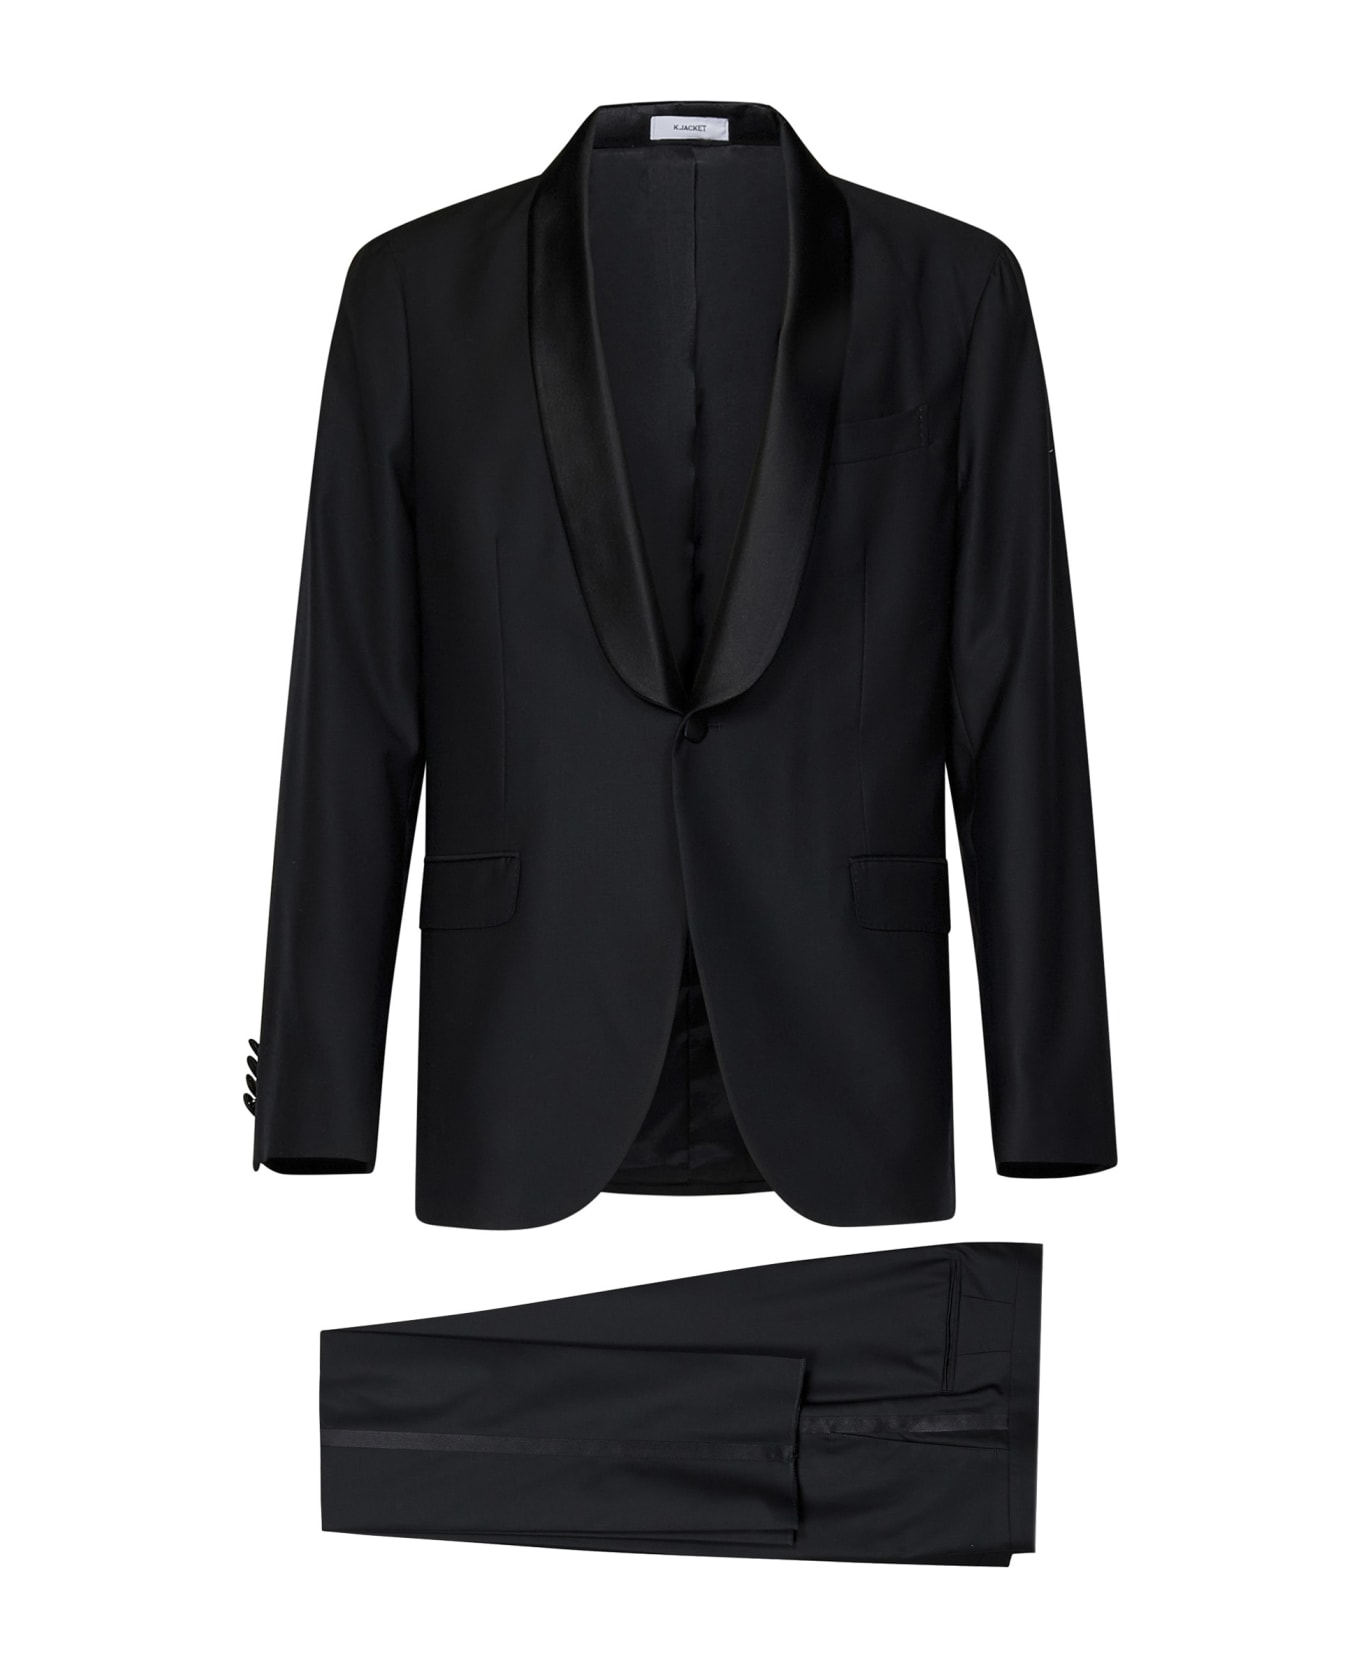 Boglioli 50 K-jacket Suit - Black